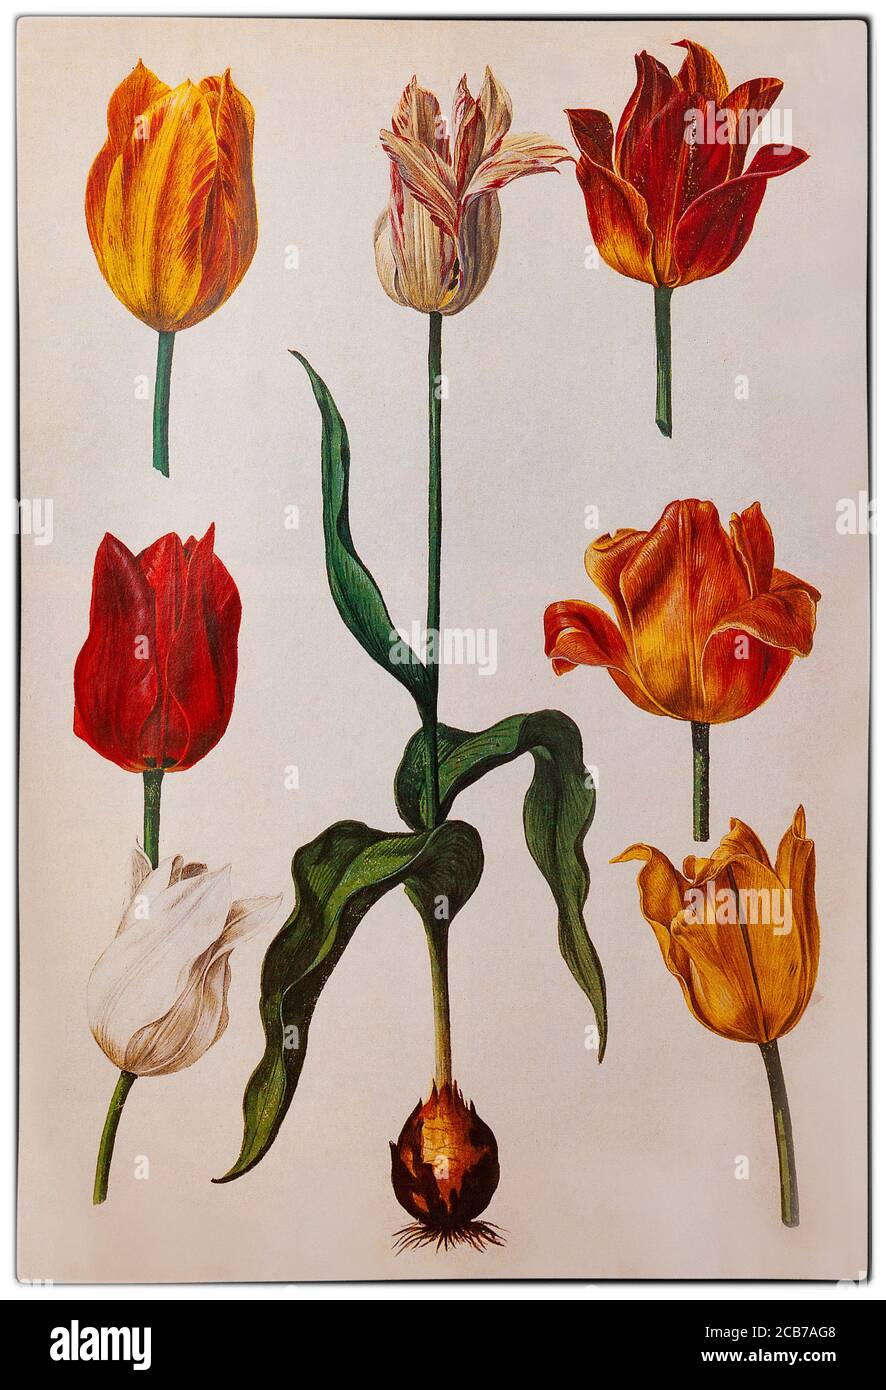 Holländische Tulpen von Pieter van Kouwenhoorn aka Pieter Kouwenhoorn (1599-1654), einem holländischen botanischen Illustrator, der während der Tulpenmanie im Goldenen Zeitalter in Haarlem und Leiden in den Niederlanden arbeitete. Während dieser Zeit erreichten die Vertragspreise für einige Glühbirnen der kürzlich eingeführten und modischen Tulpe außerordentlich hohe Werte und brachen dann dramatisch zusammen. Stockfoto